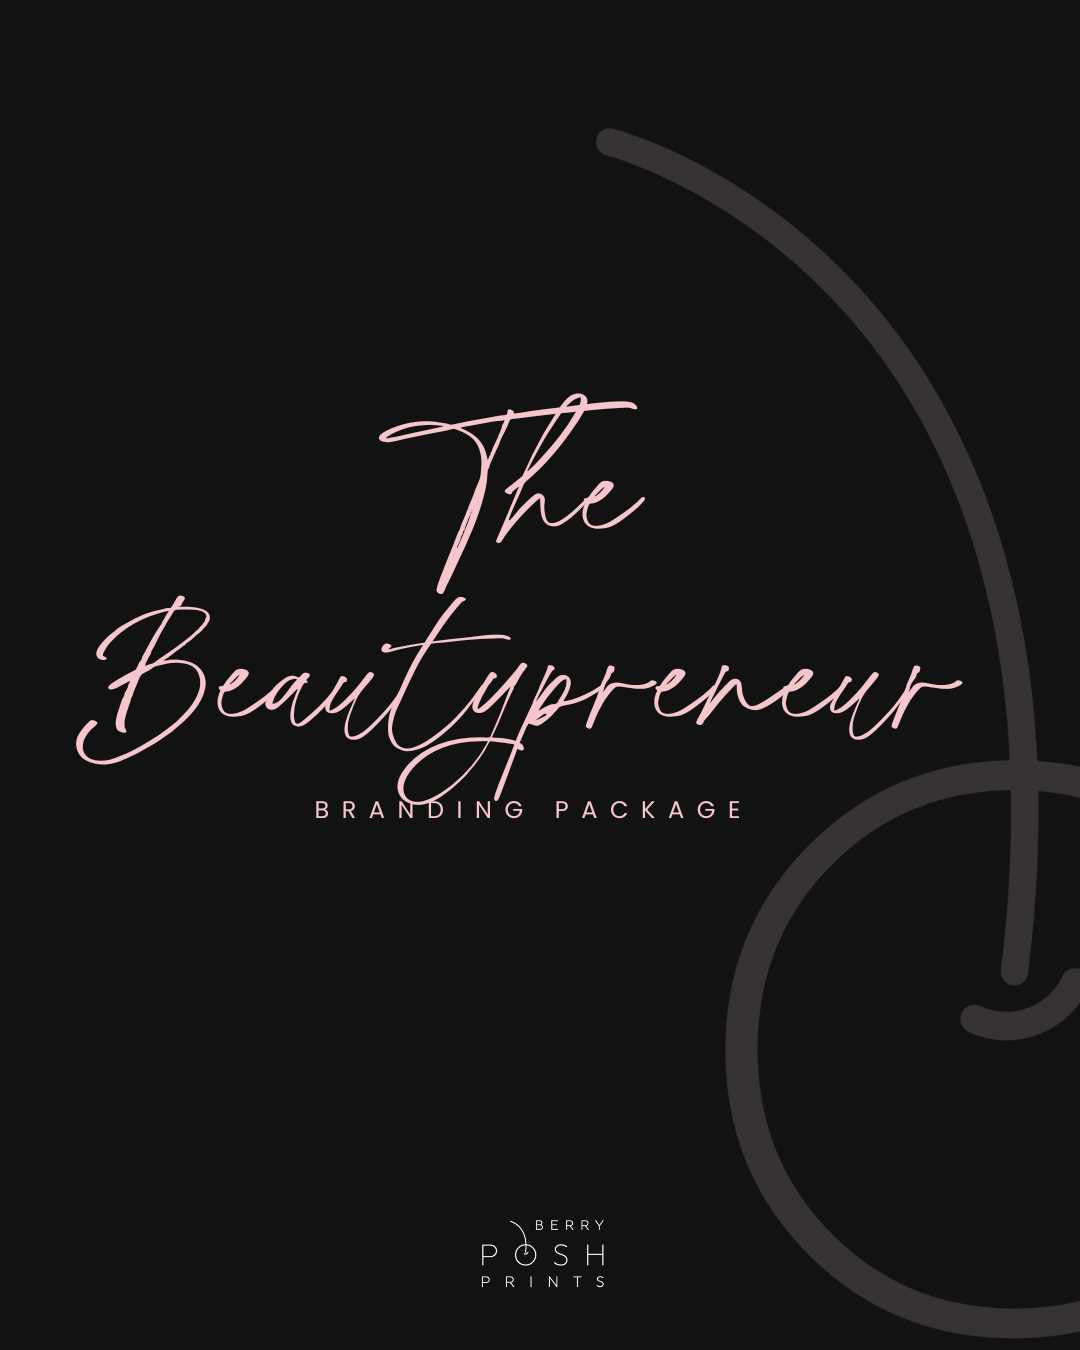 The Beautypreuner Package